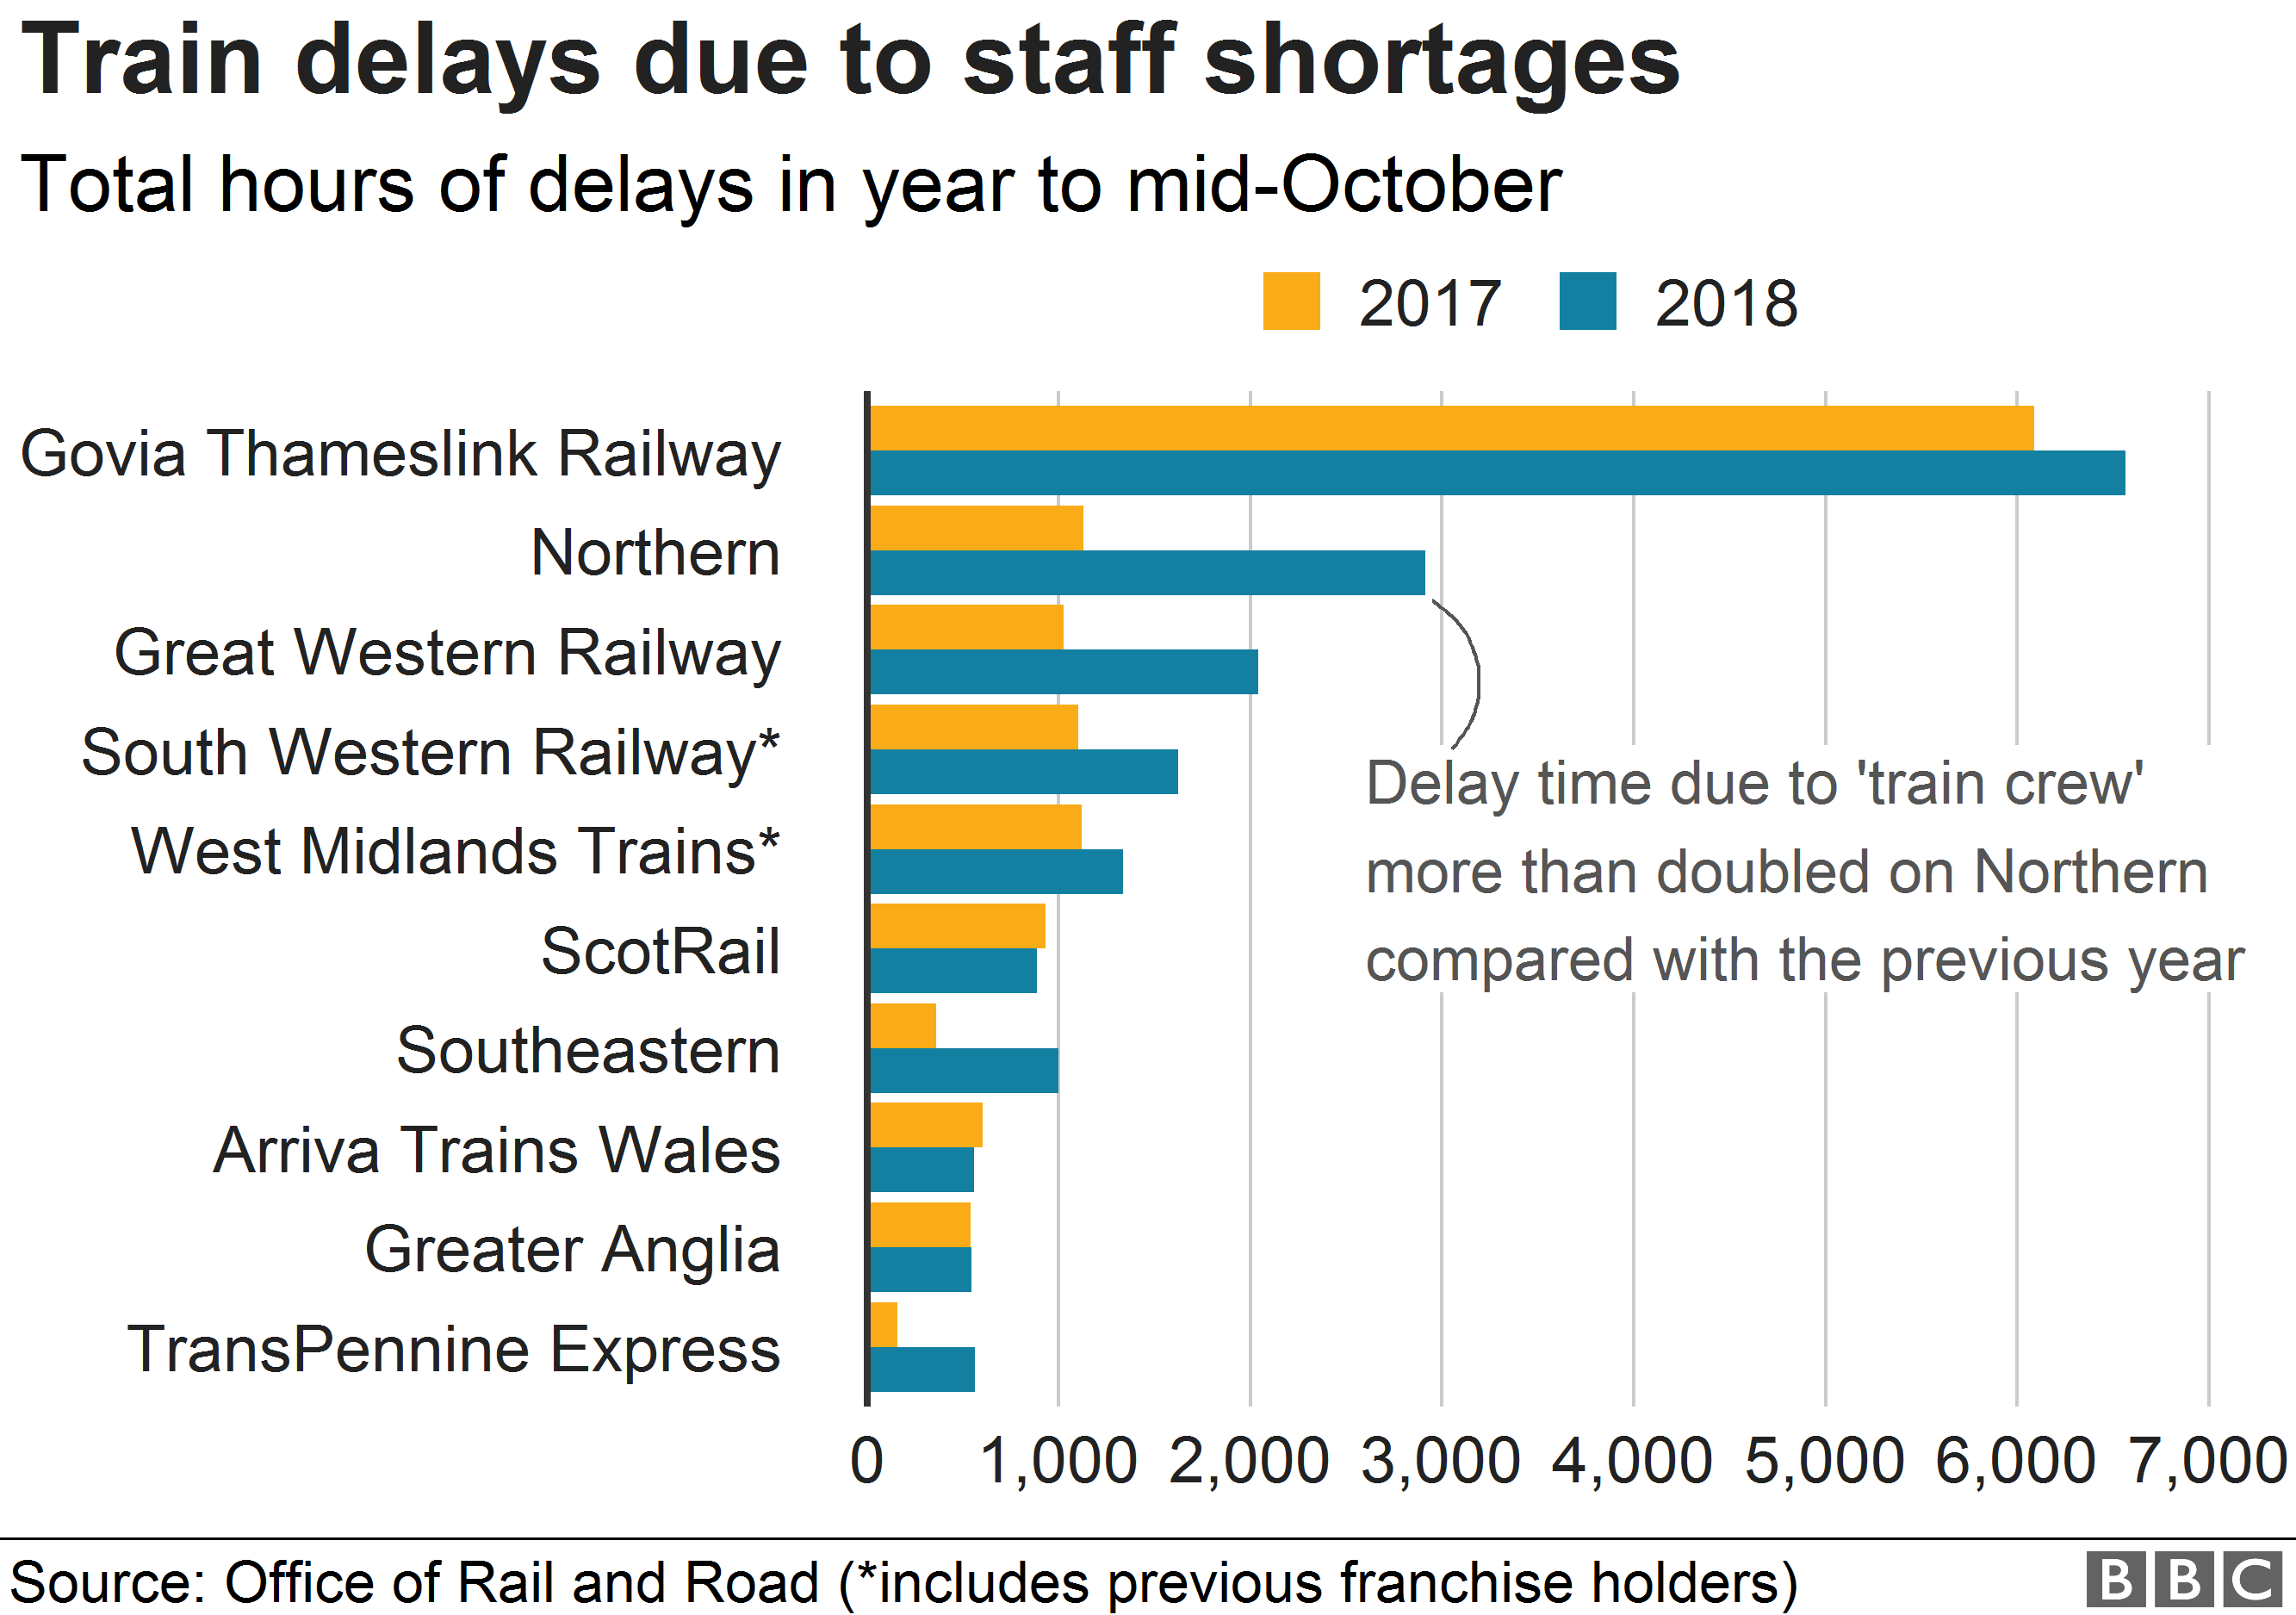 Диаграмма, показывающая задержки на железнодорожном транспорте из-за нехватки персонала